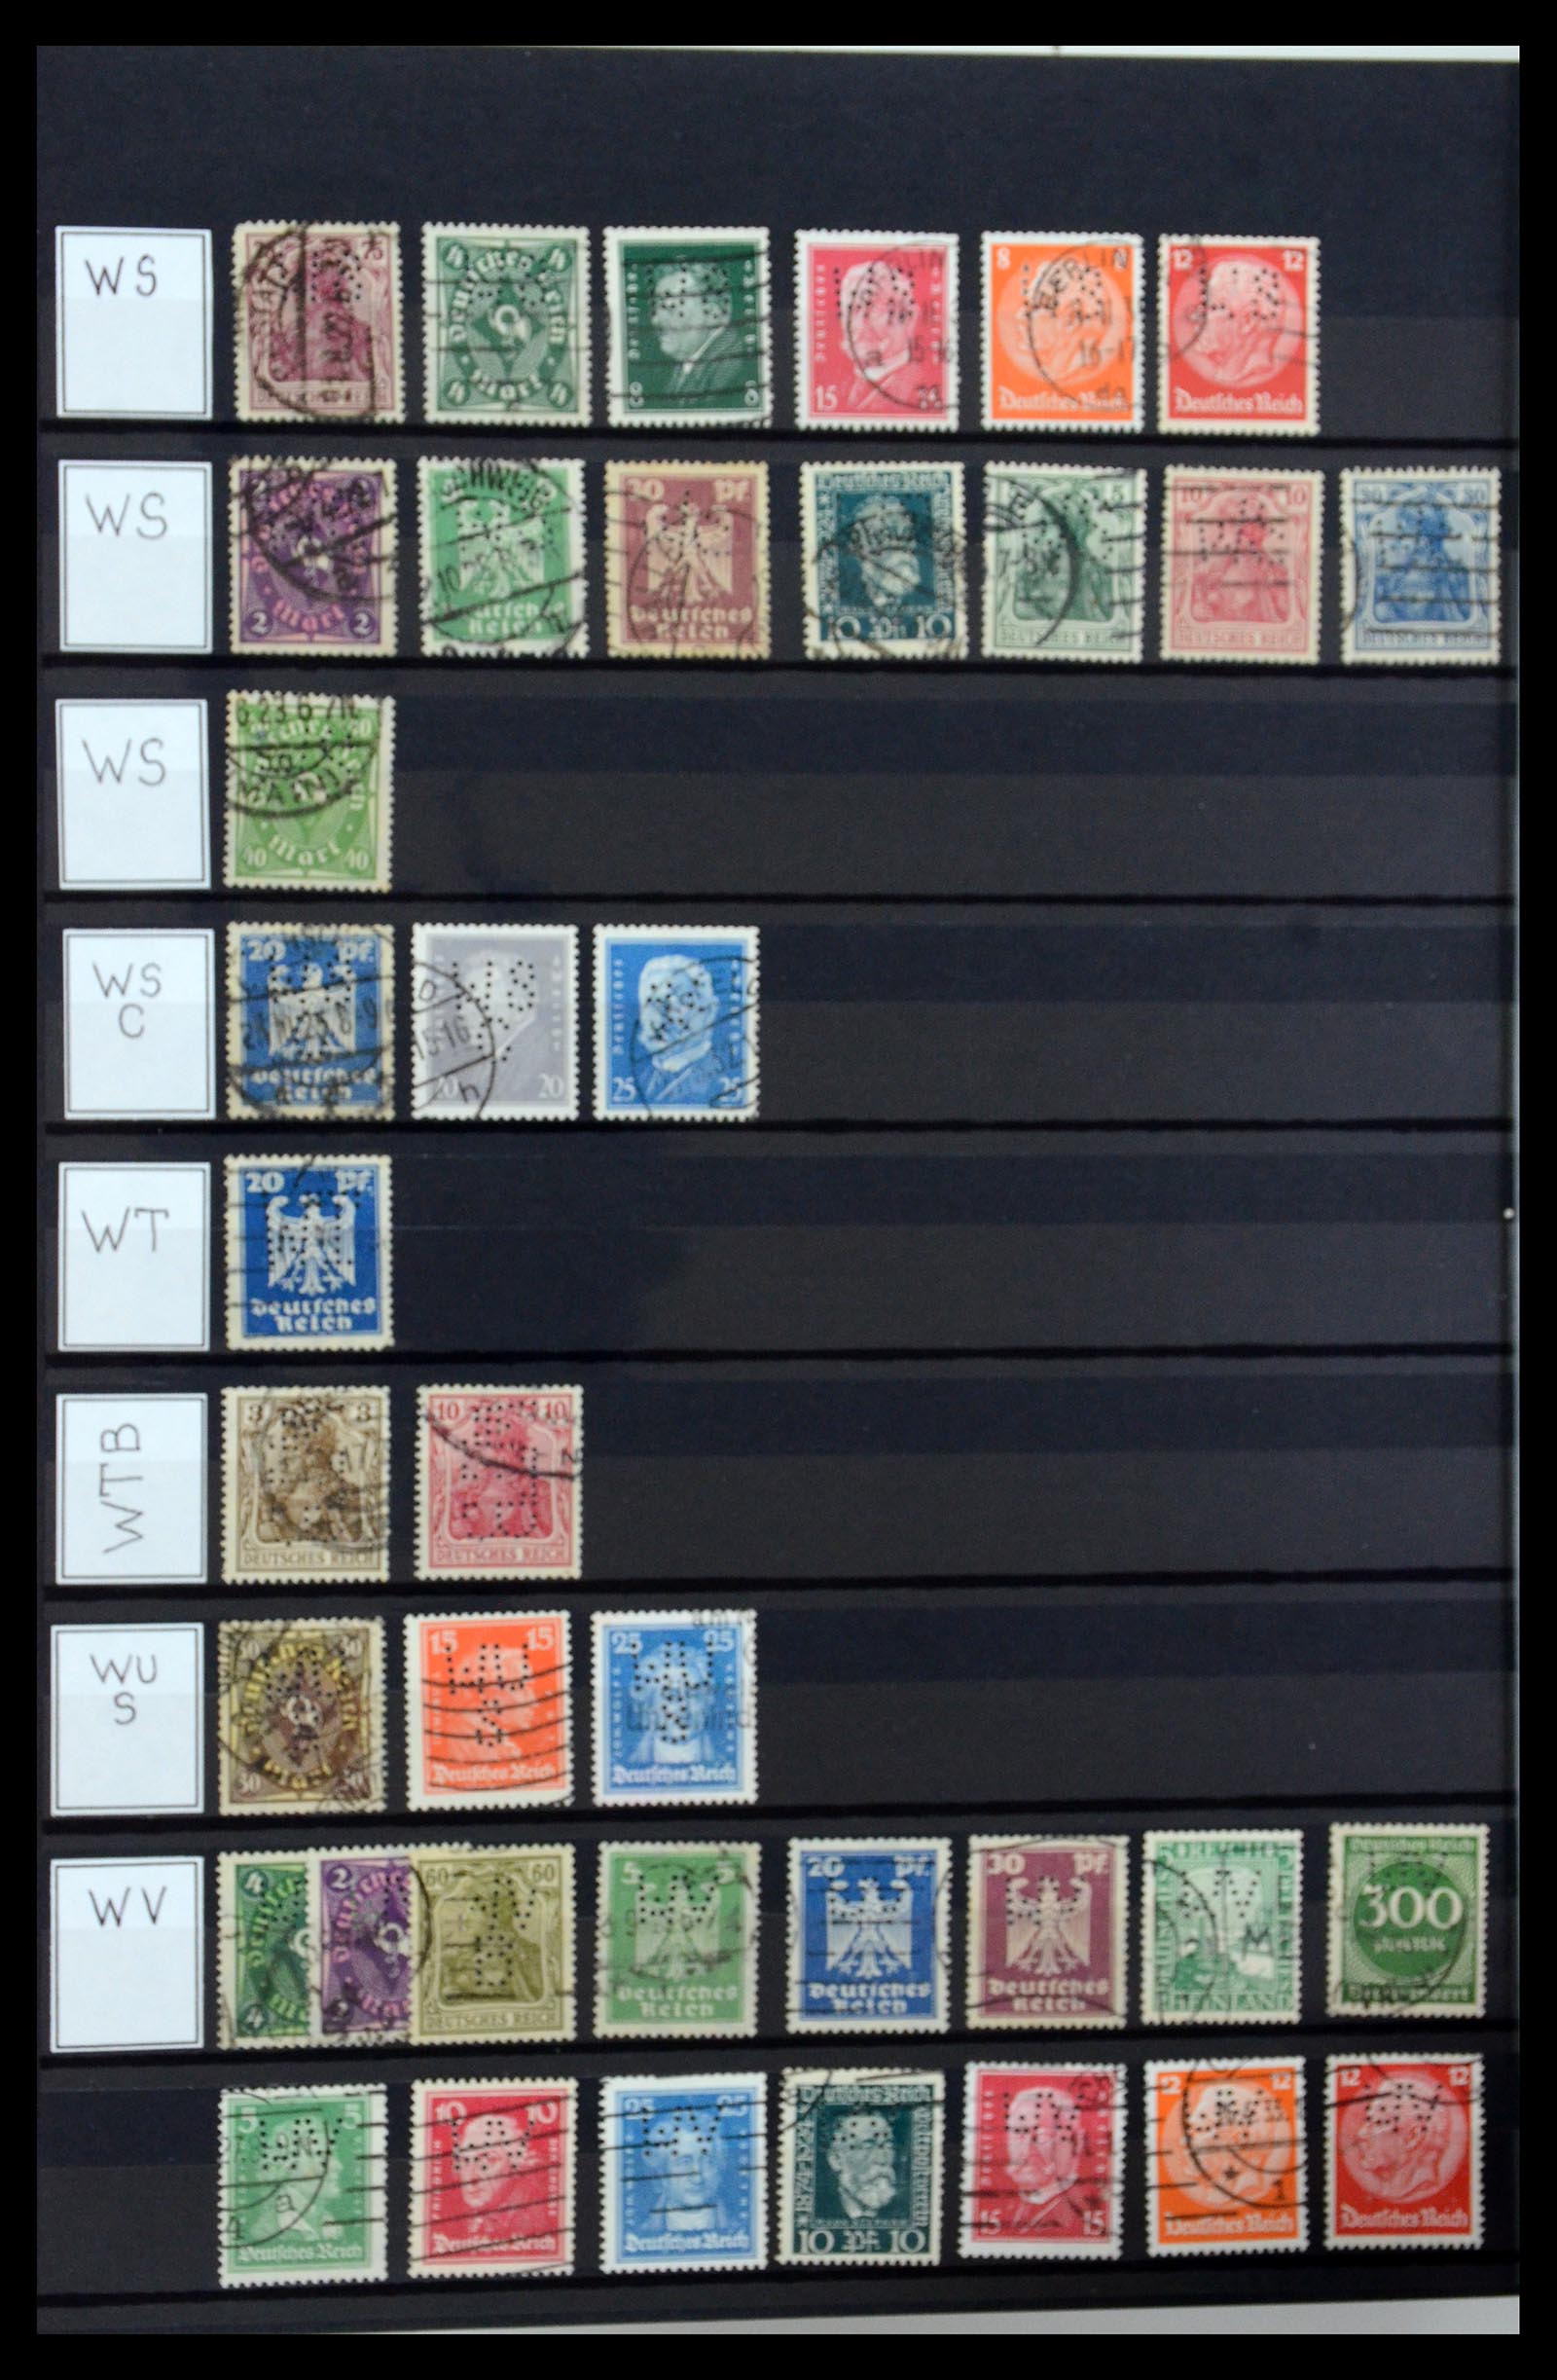 36405 343 - Stamp collection 36405 German Reich perfins 1880-1945.